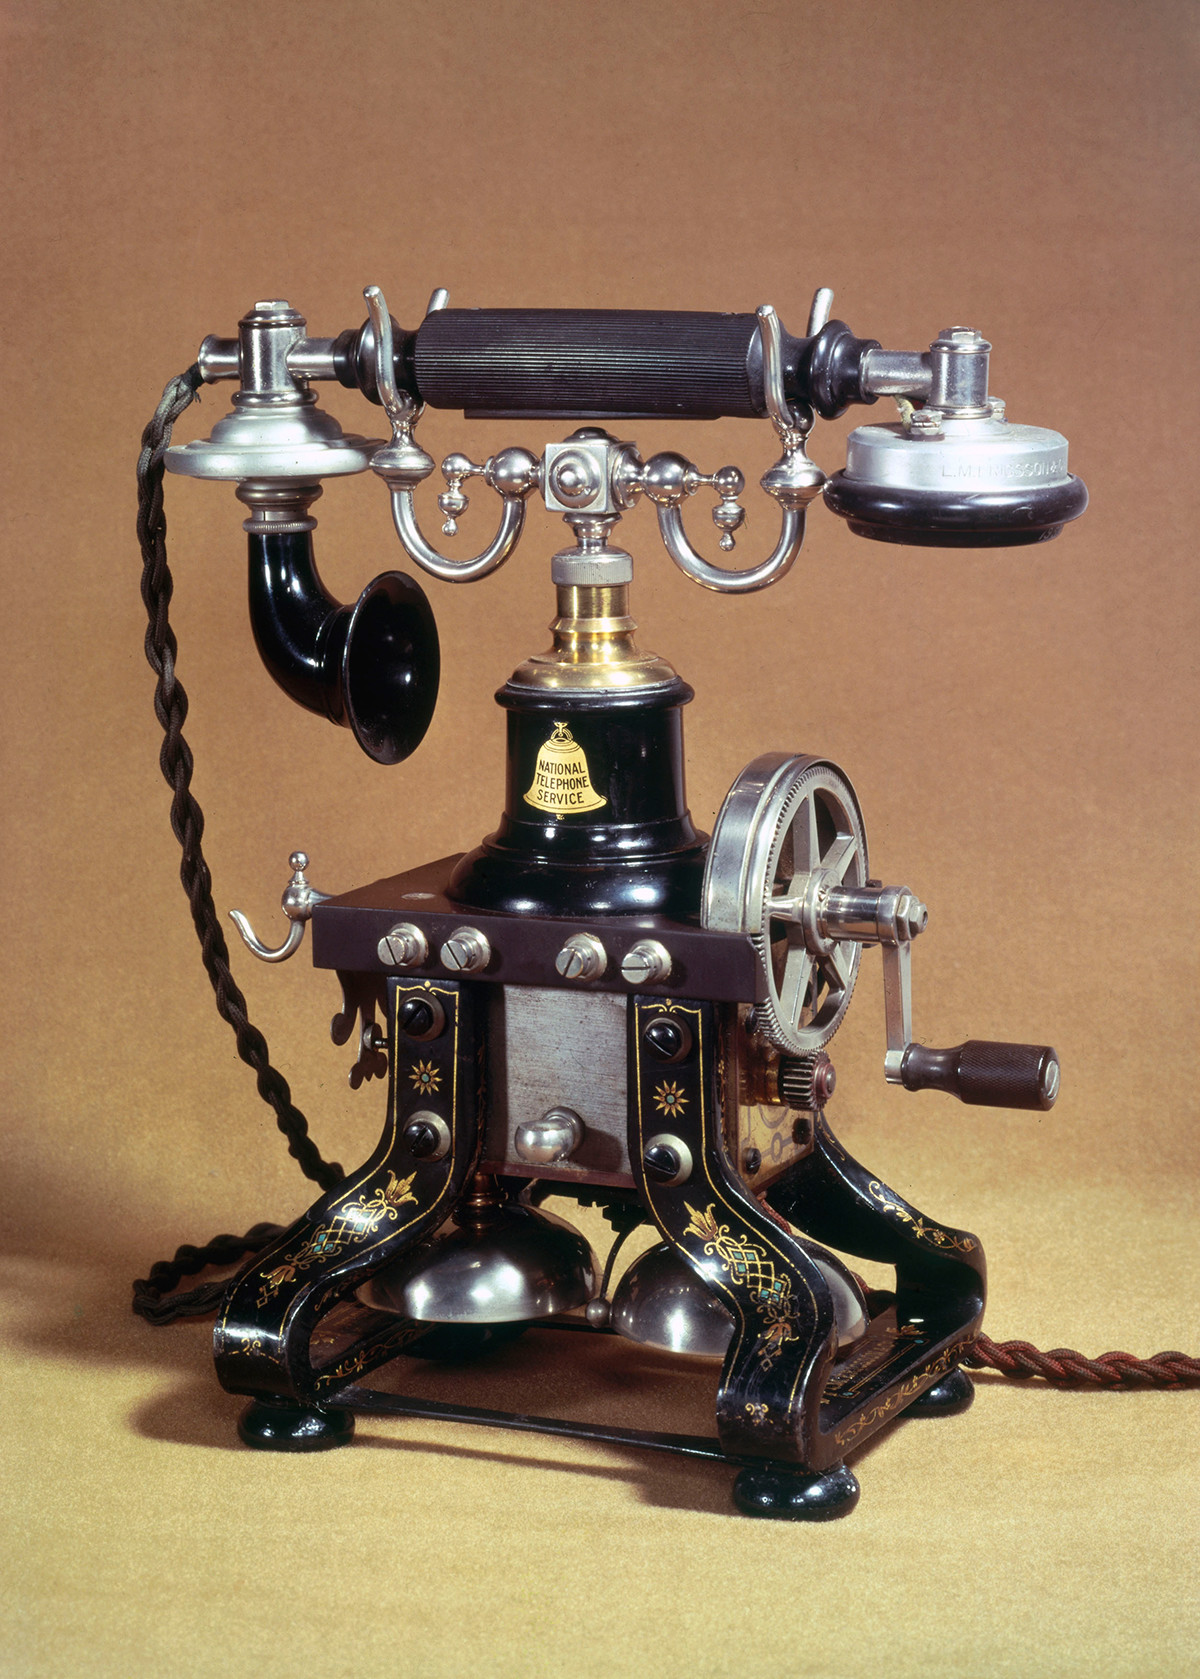 Telefono da tavolo Ericsson, 1890
